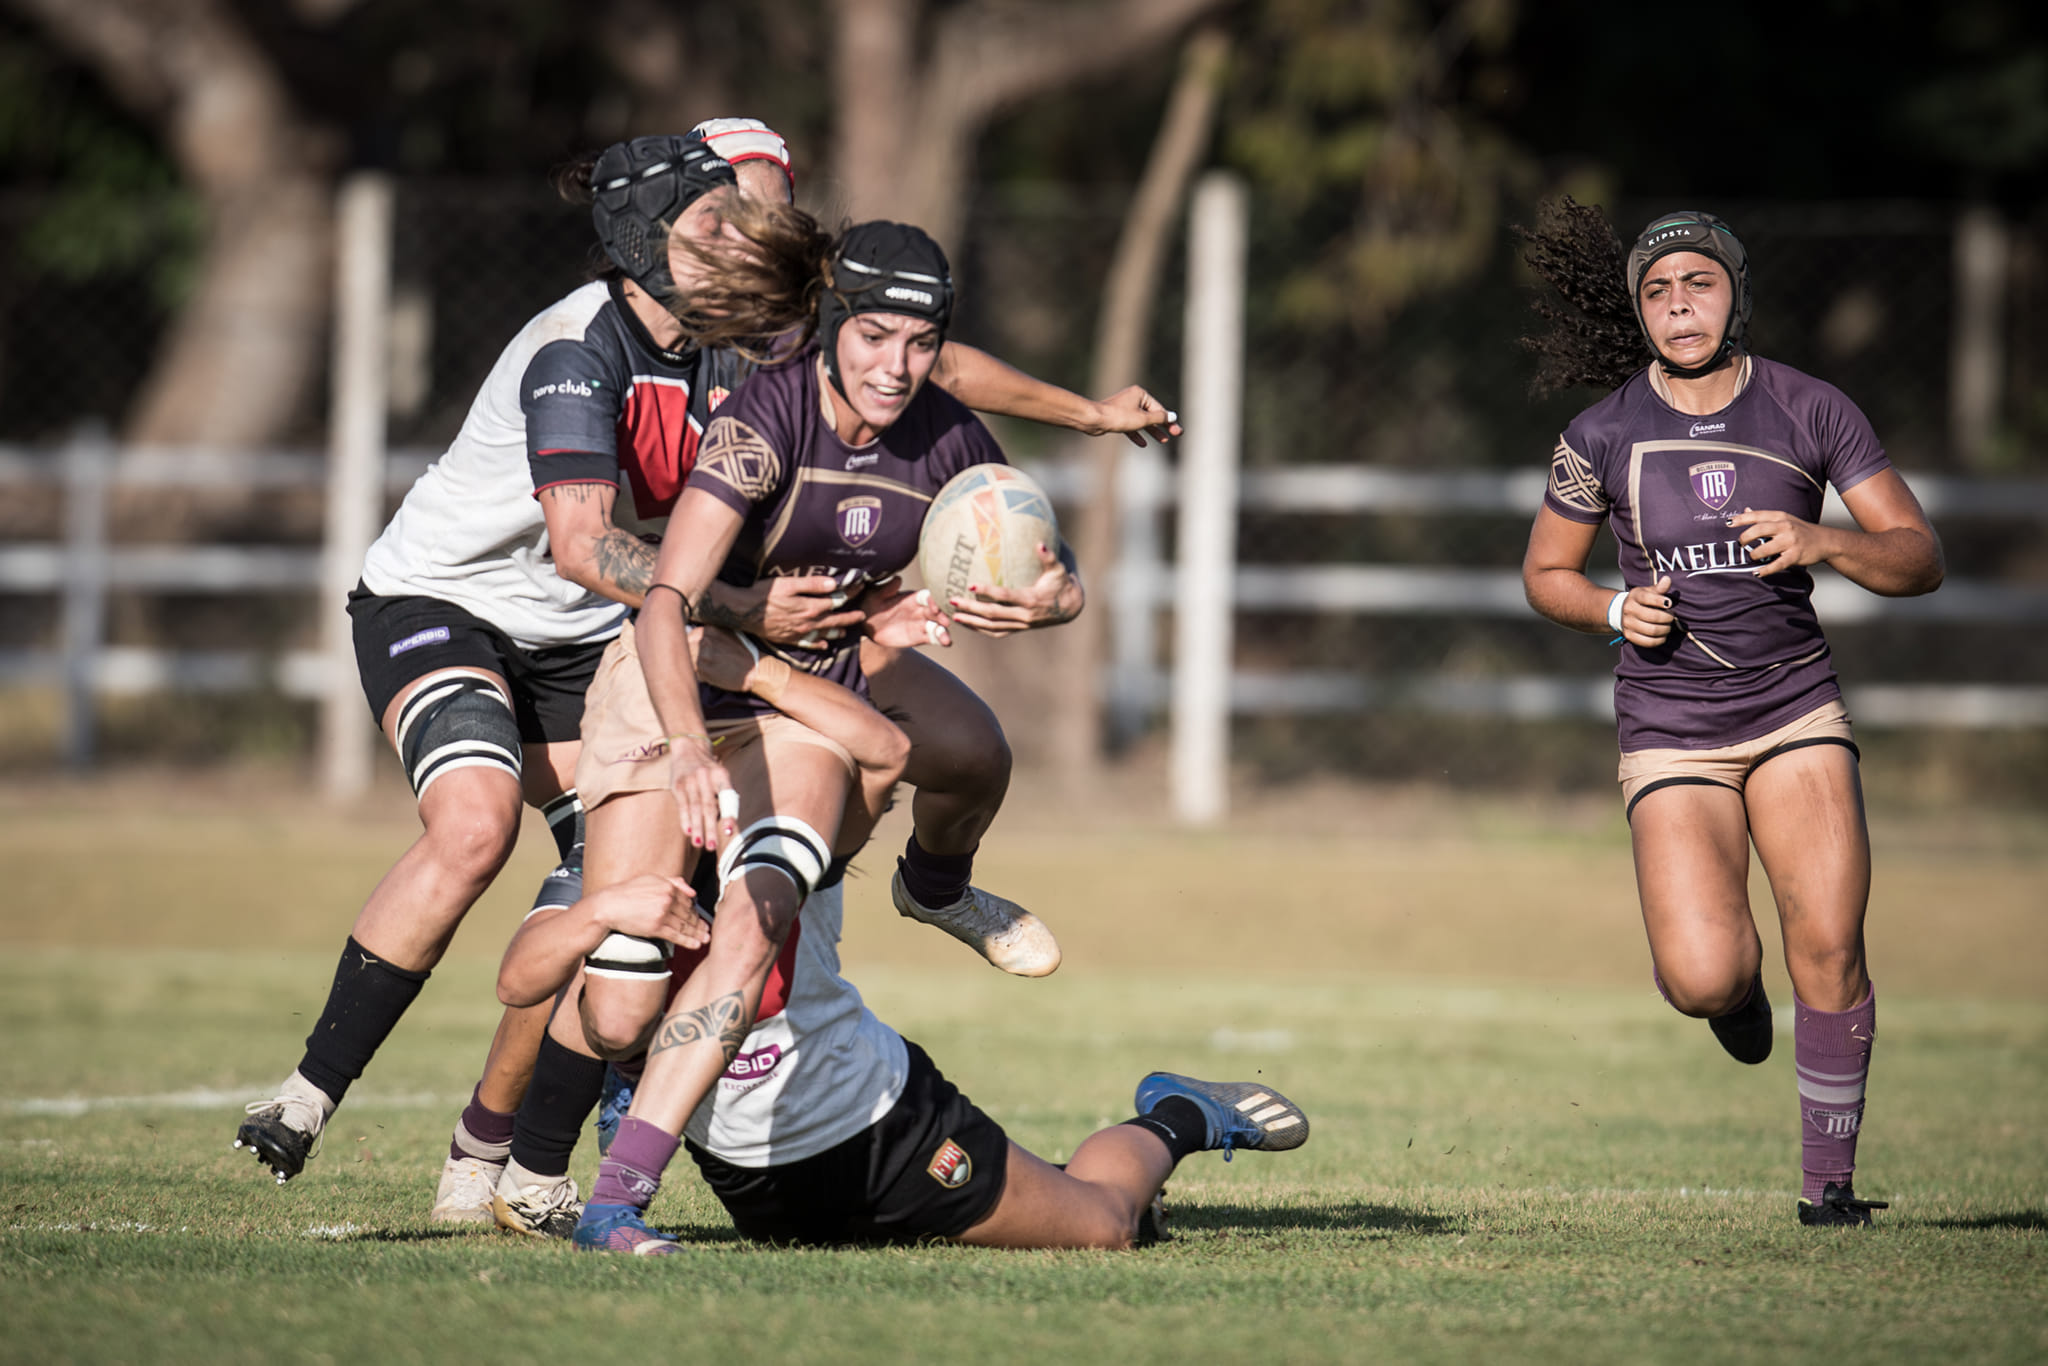 Centro-Oeste e São Paulo Capital decidem título brasileiro feminino de Rugby XV nesse sábado em Cuiabá